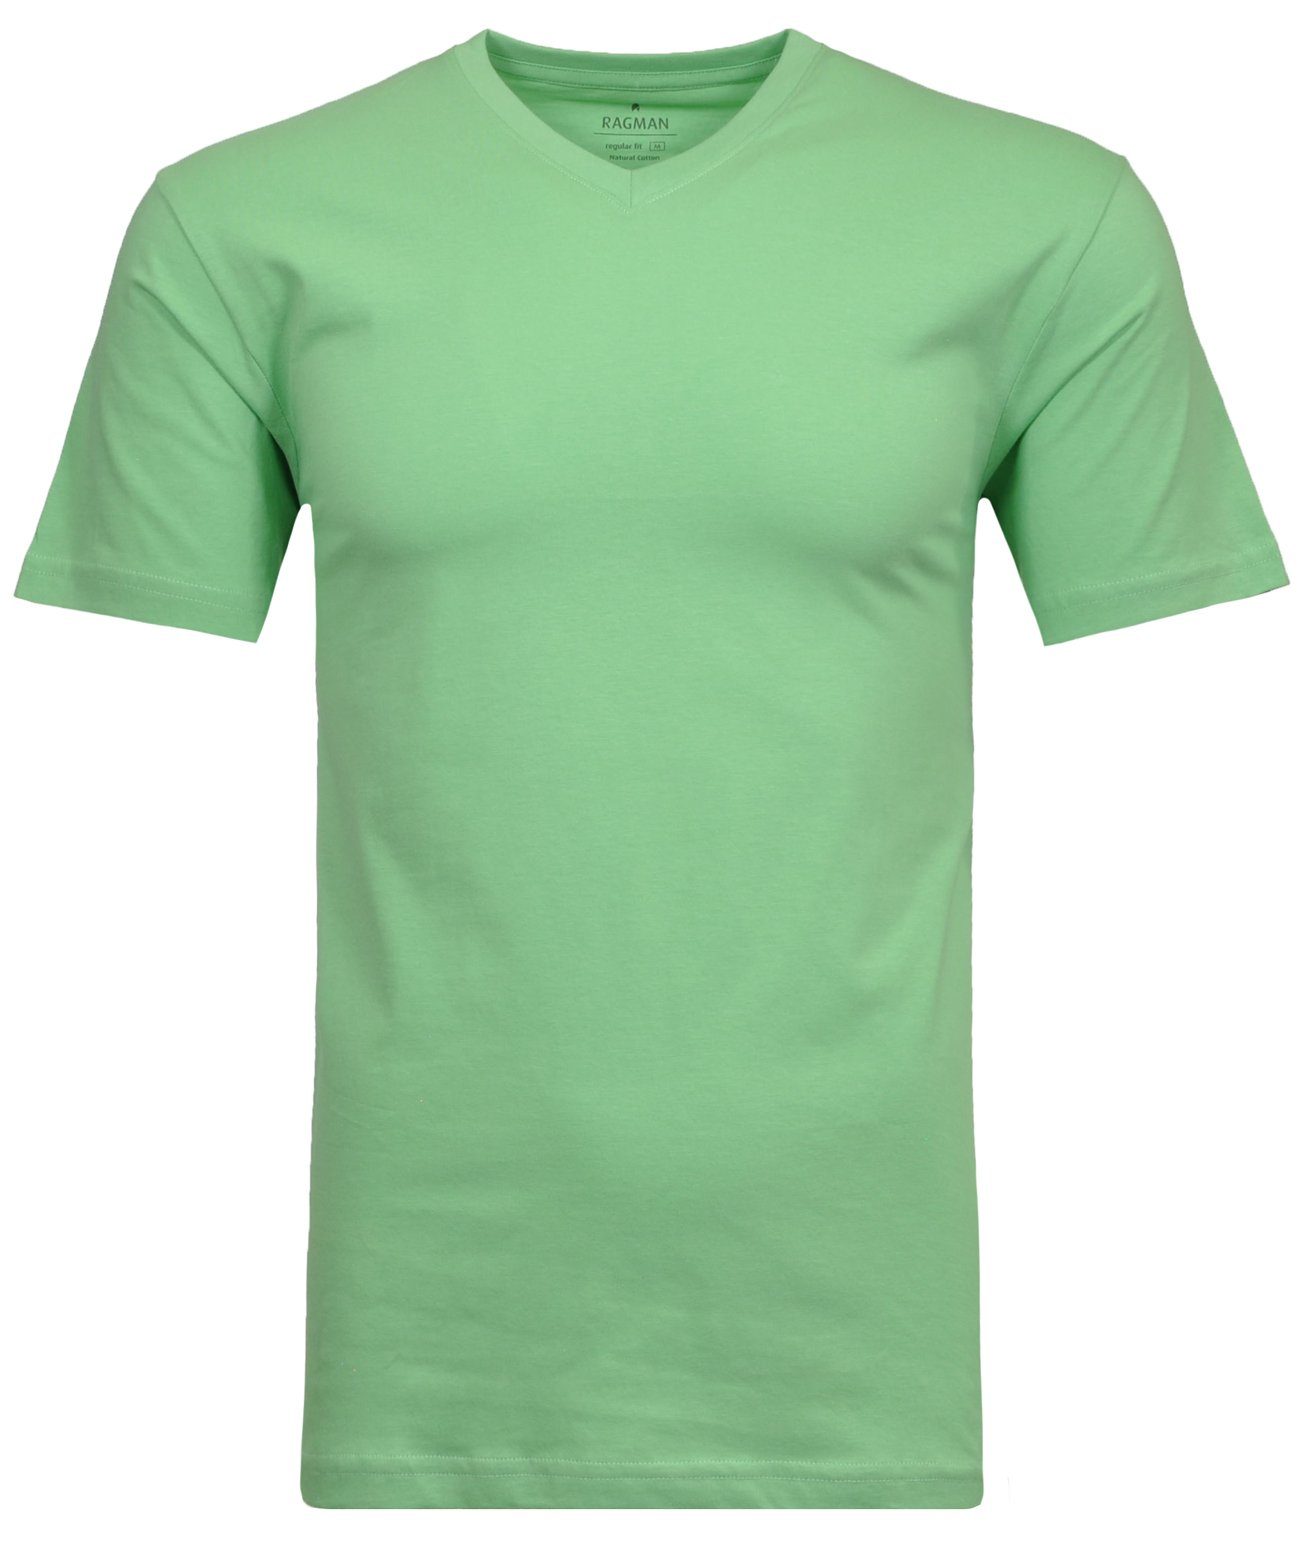 RAGMAN T-Shirt Maigrün